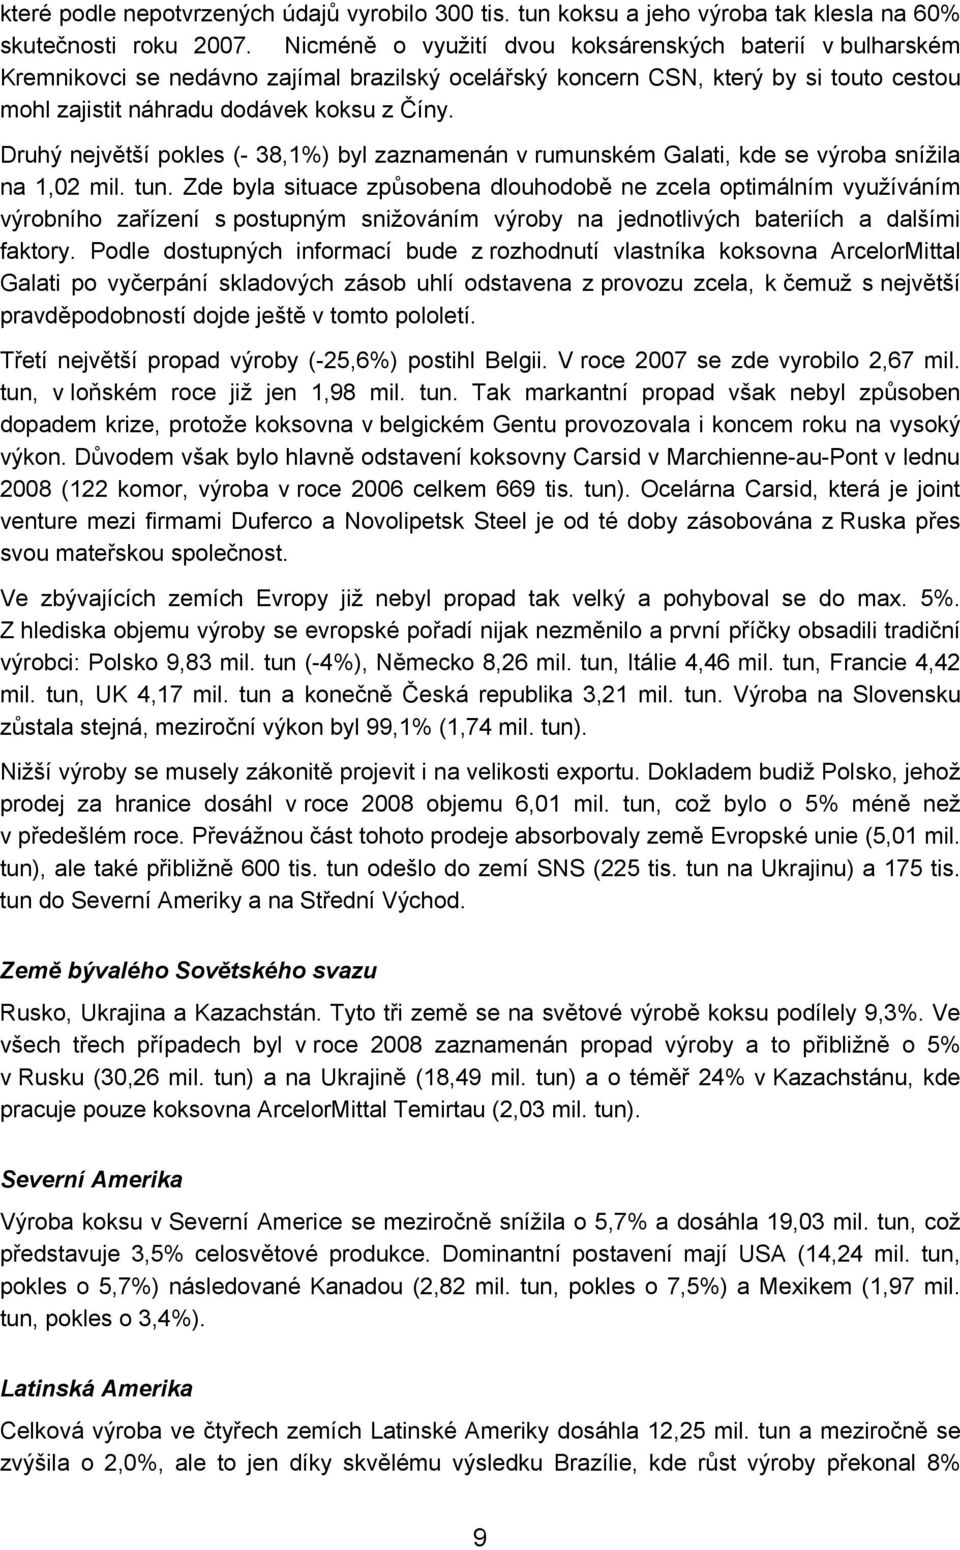 Druhý největší pokles (- 38,1%) byl zaznamenán v rumunském Galati, kde se výroba snížila na 1,02 mil. tun.